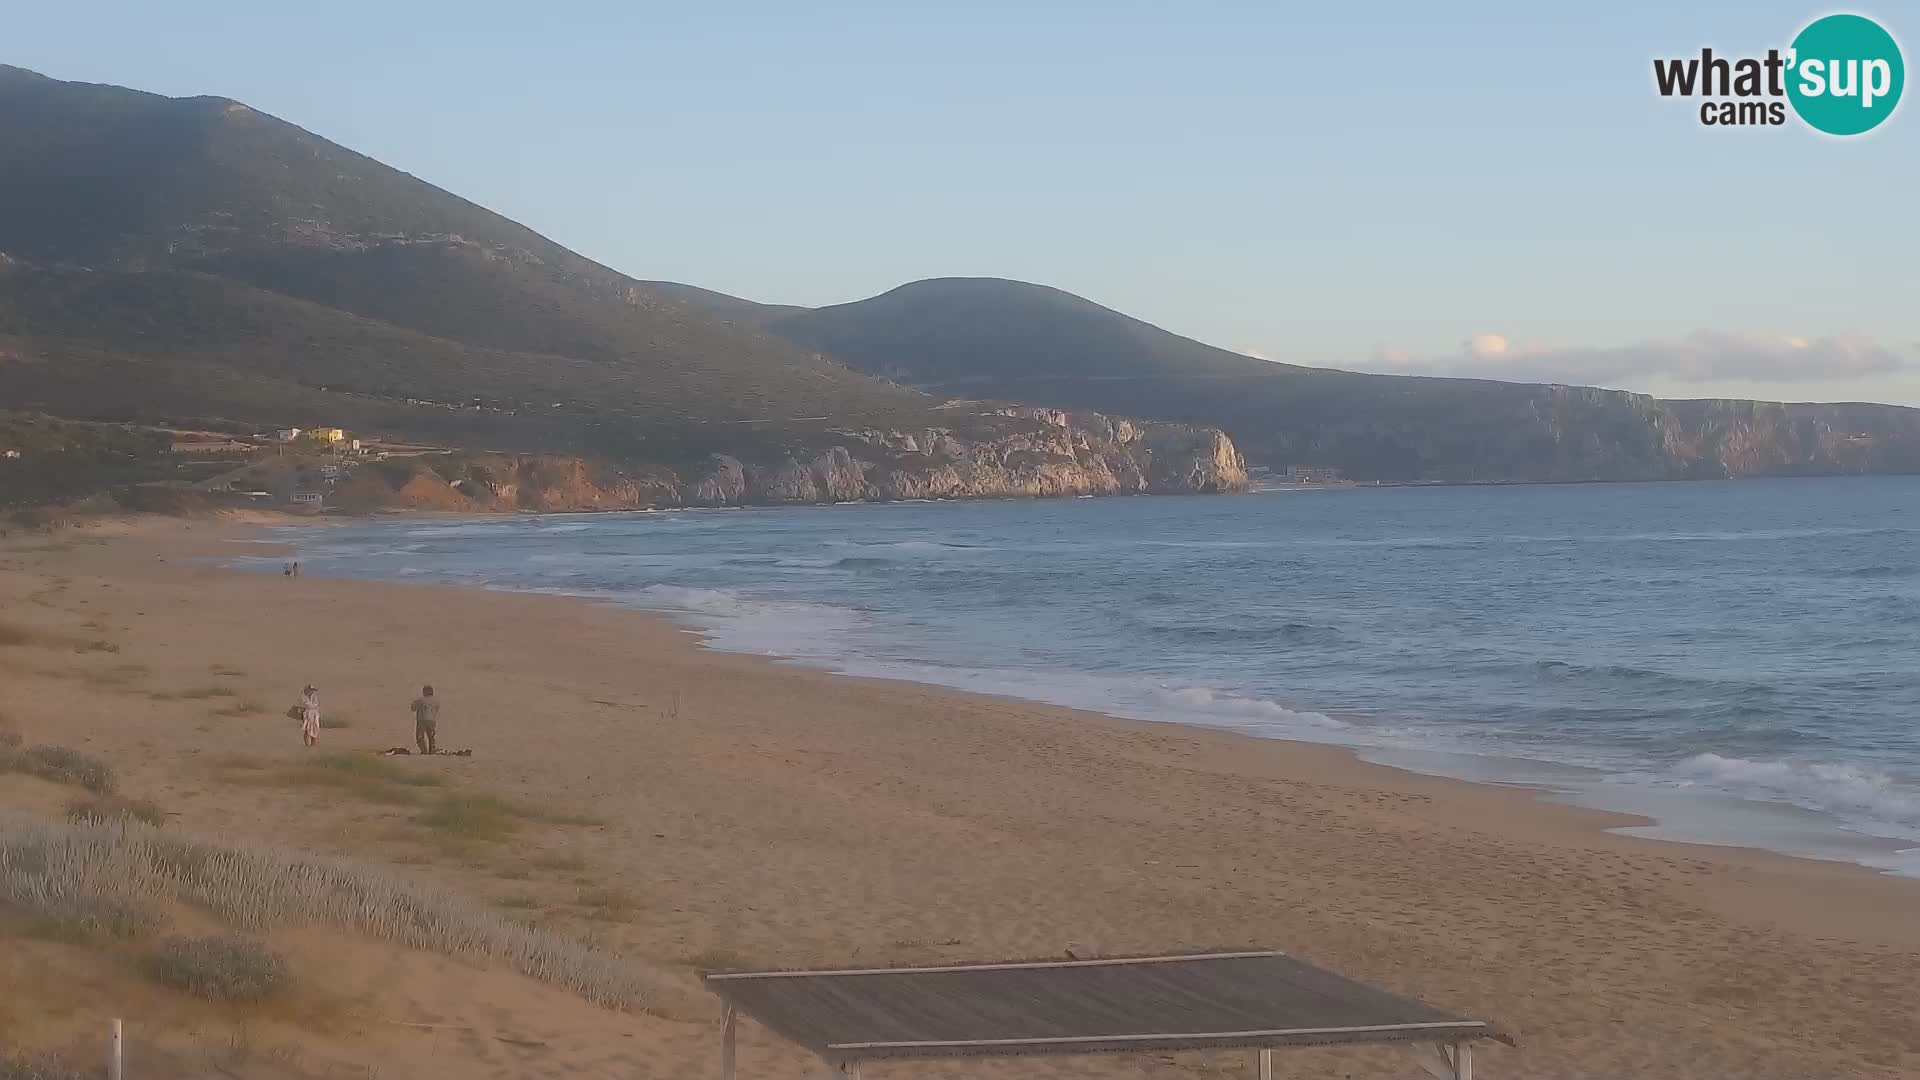 Live-Webcam am Strand von San Nicolò in Buggerru, Sardinien – Beobachten Sie die Wellen und den Sonnenuntergang